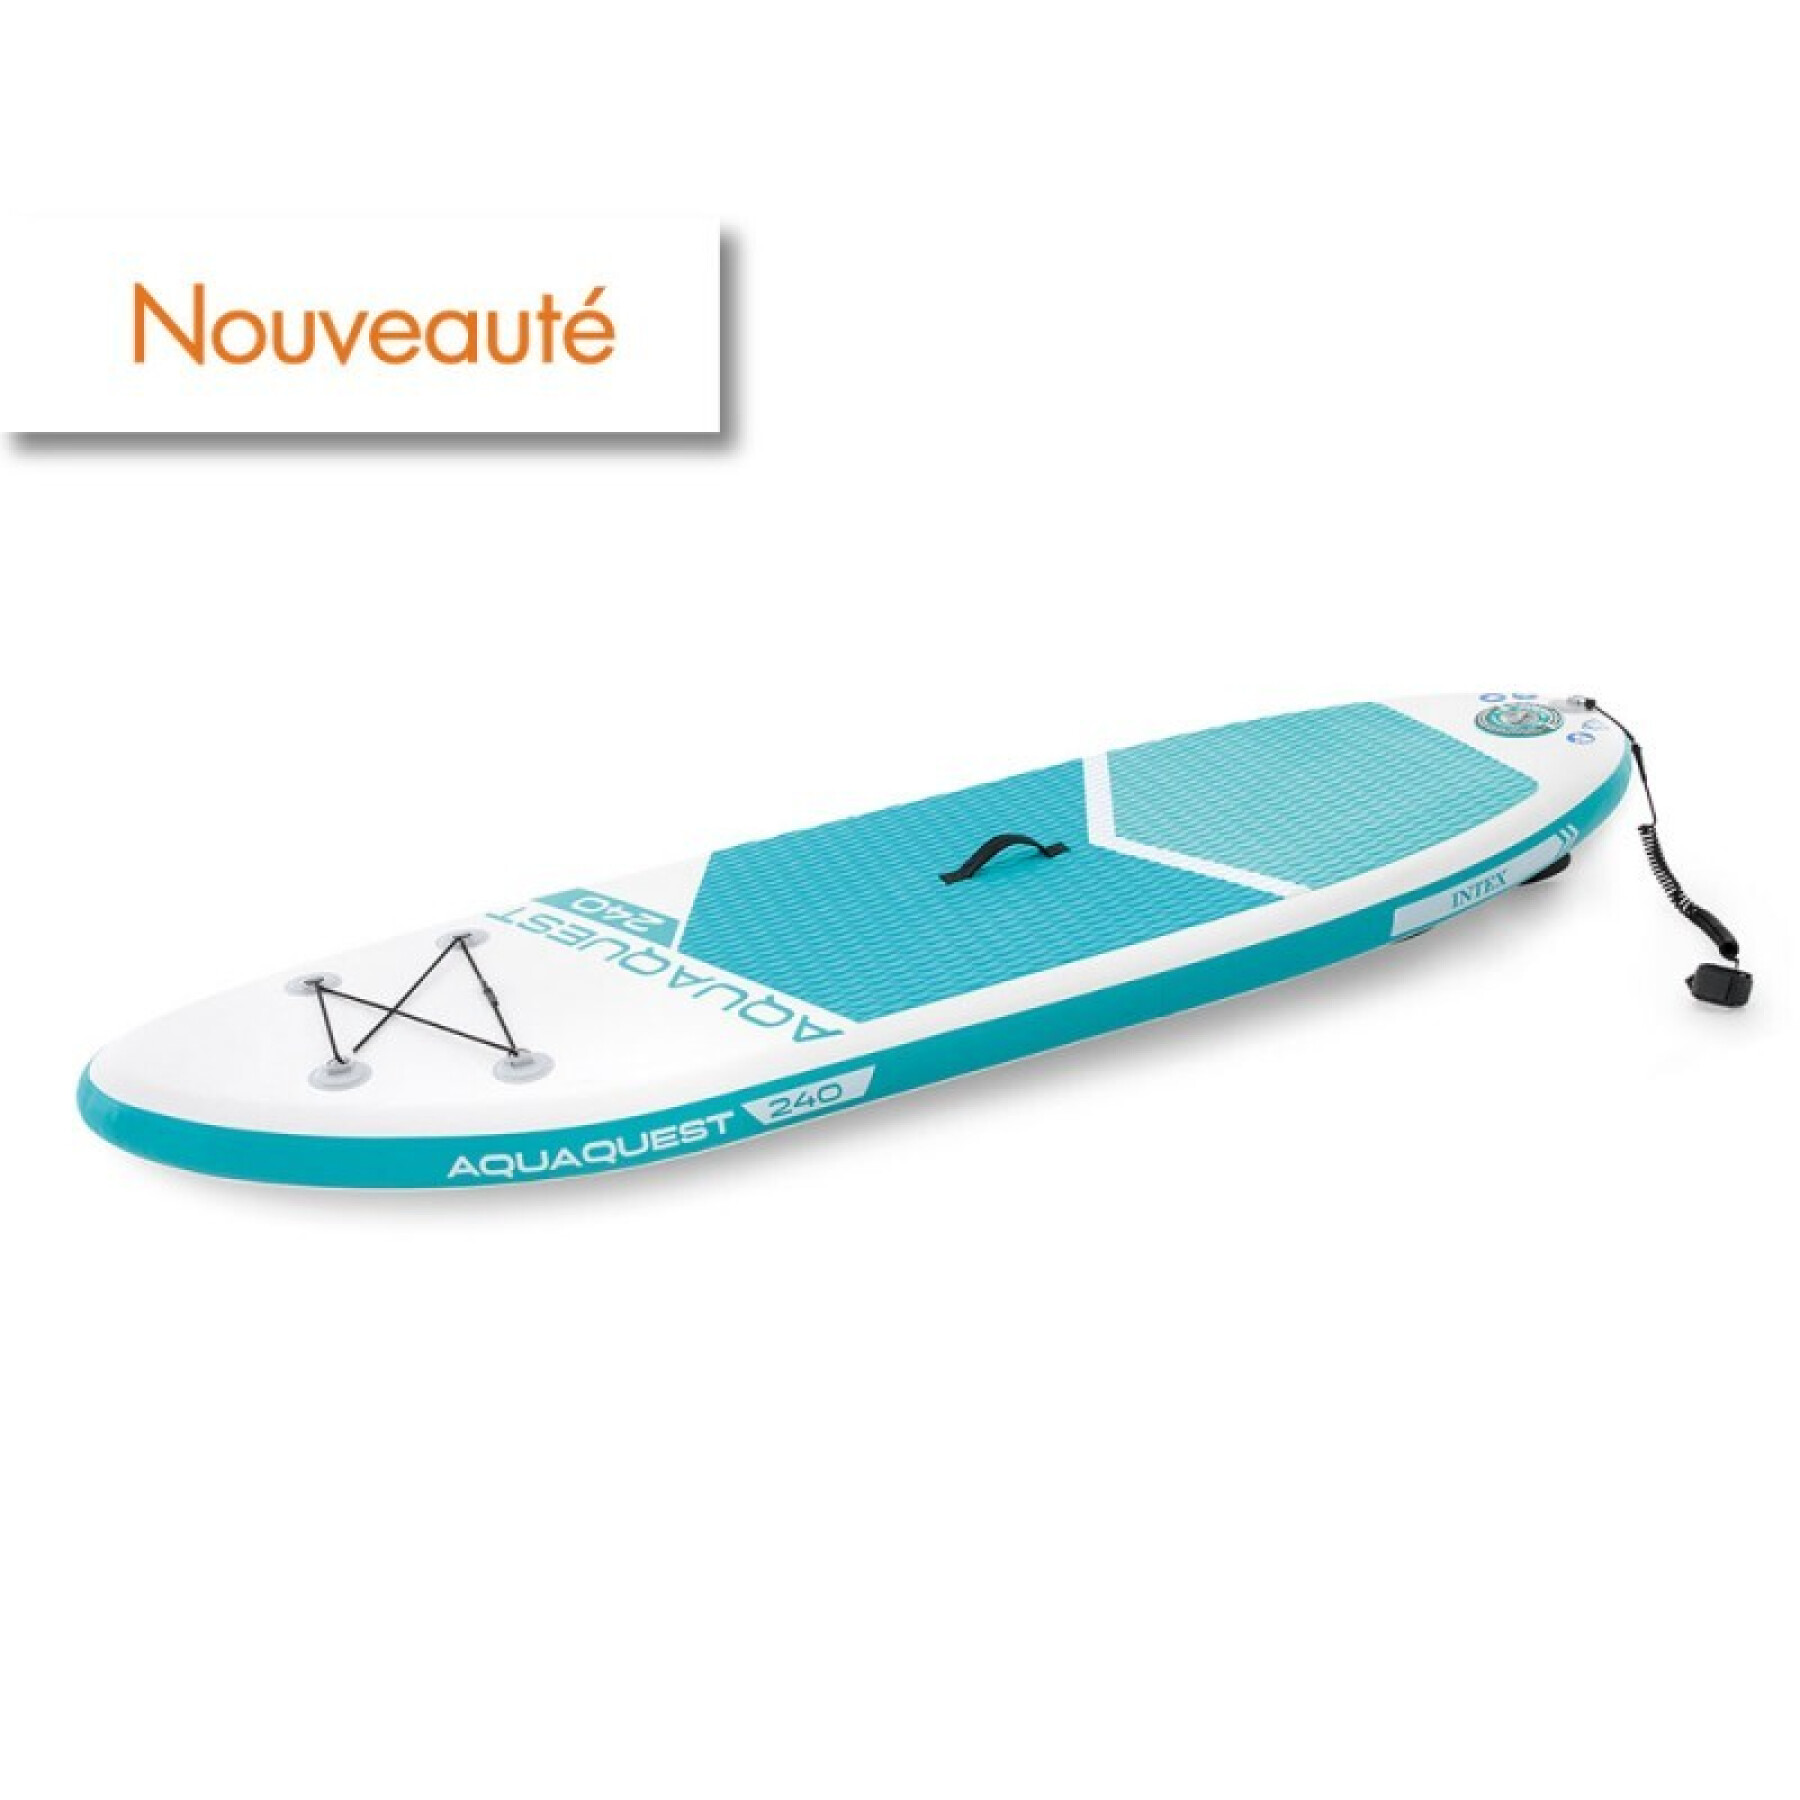 Prancha de stand up paddle Intex Aqua Ques